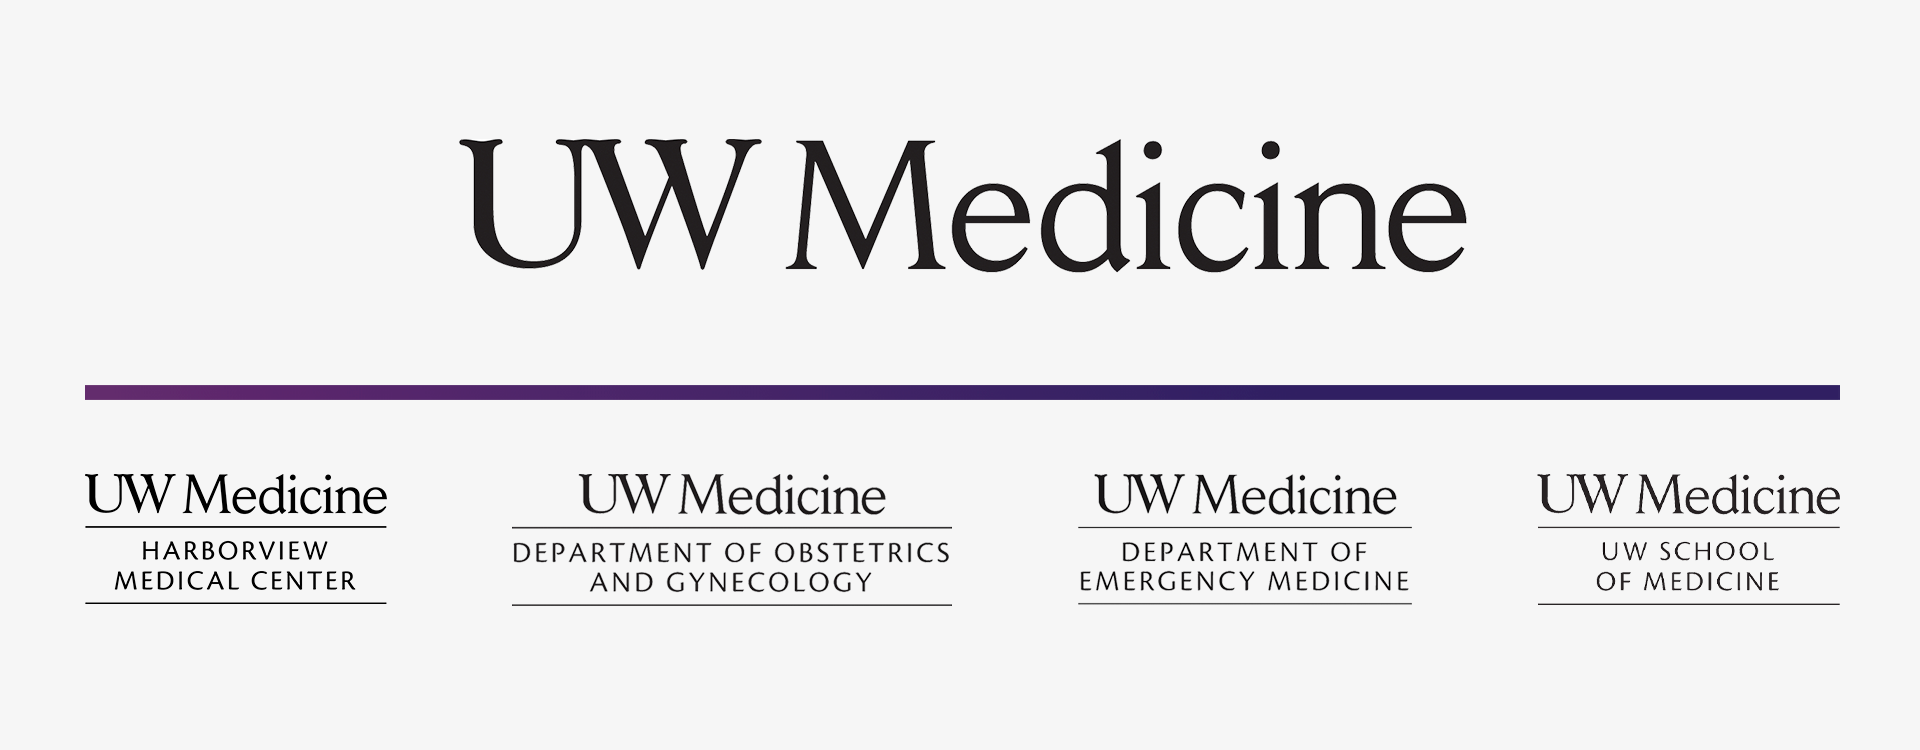 UW Med Logo Identity